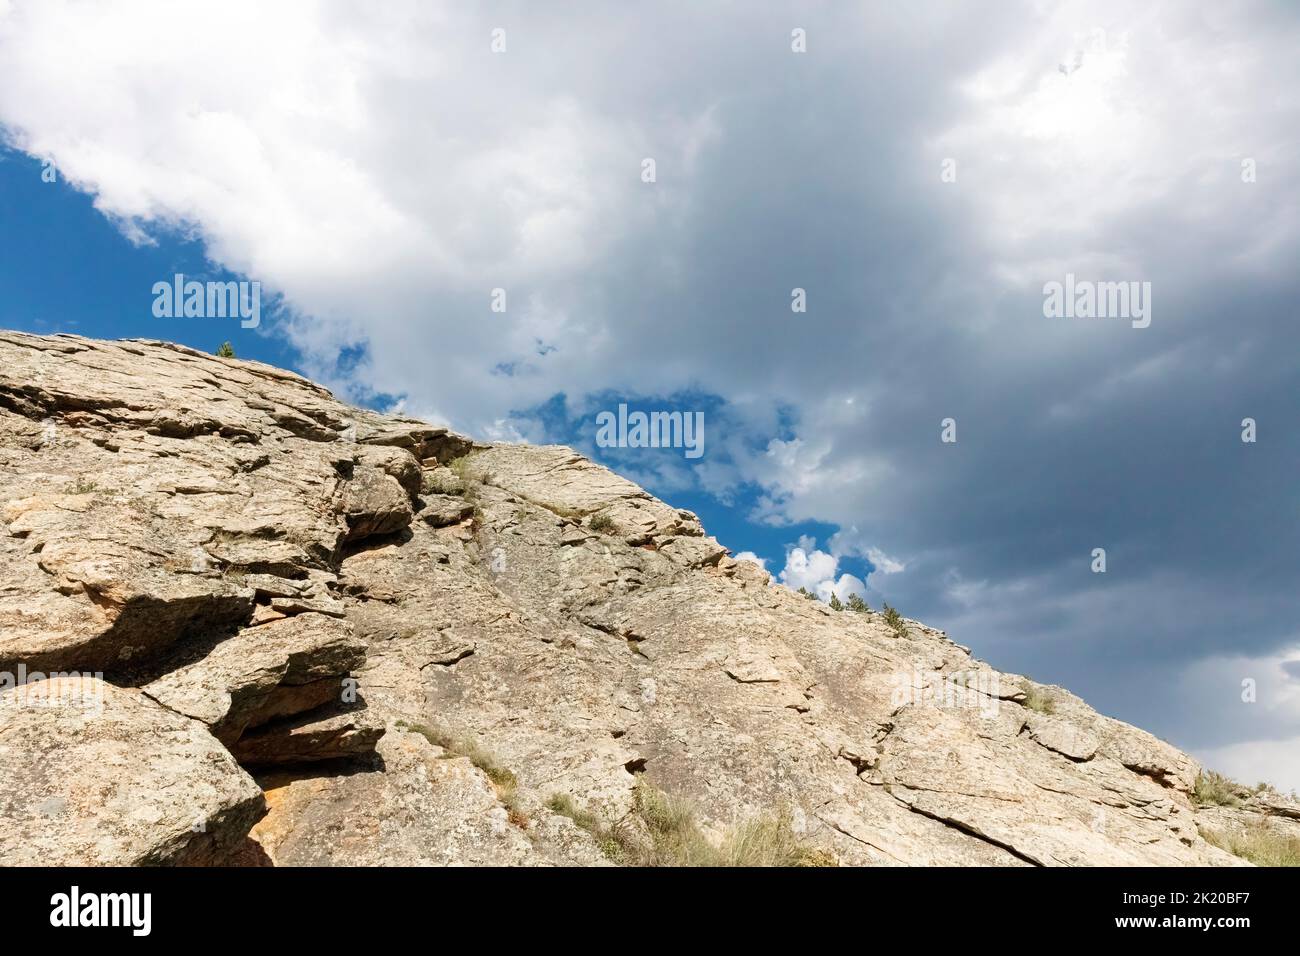 El rock se encuentra con el cielo, Colorado, EE.UU Foto de stock